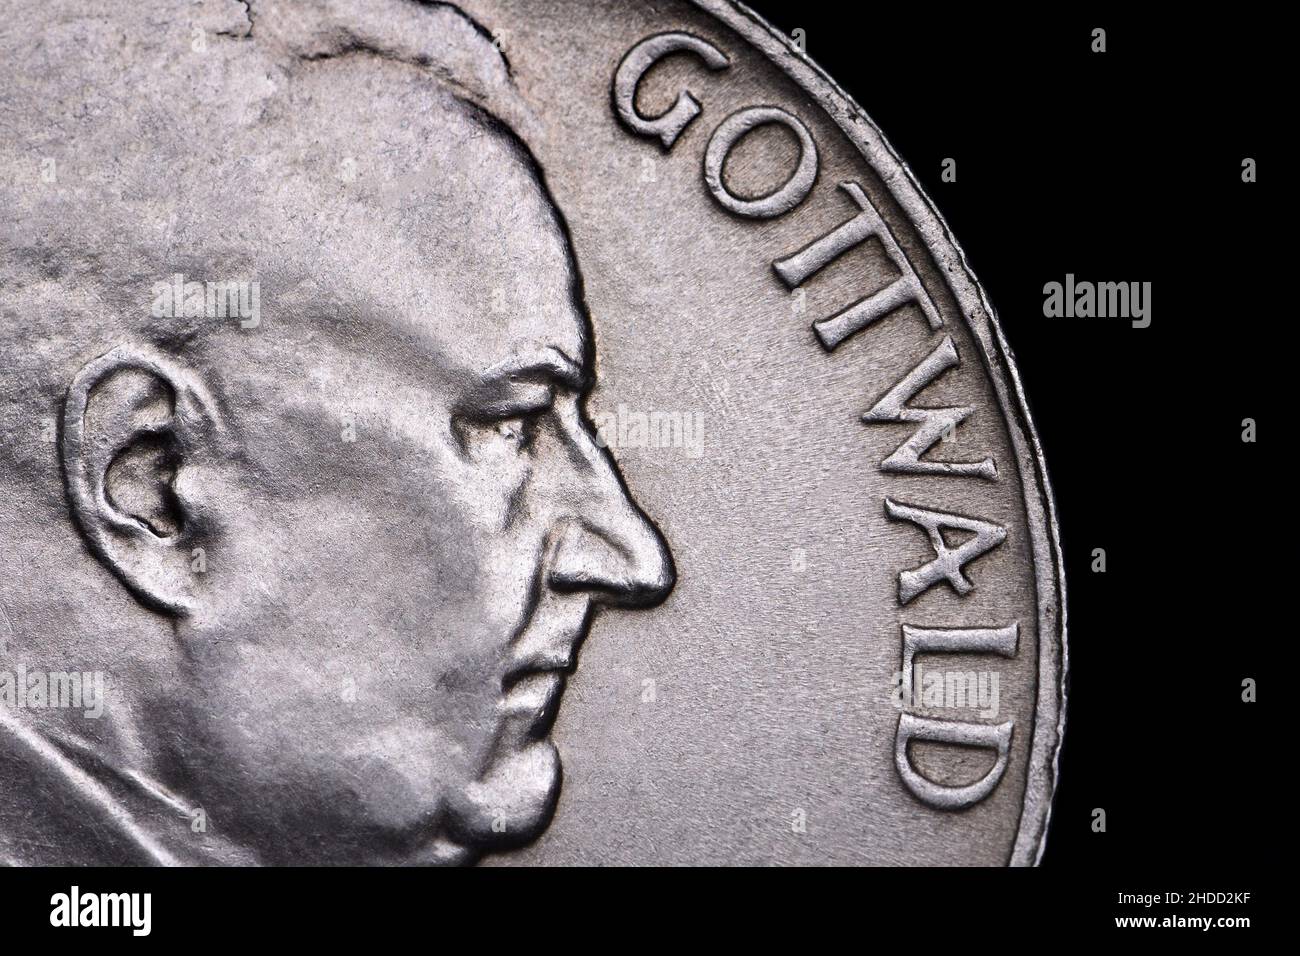 Czechoslovak coin (1951) : President Klement Gottwald 10Kc coin Stock Photo